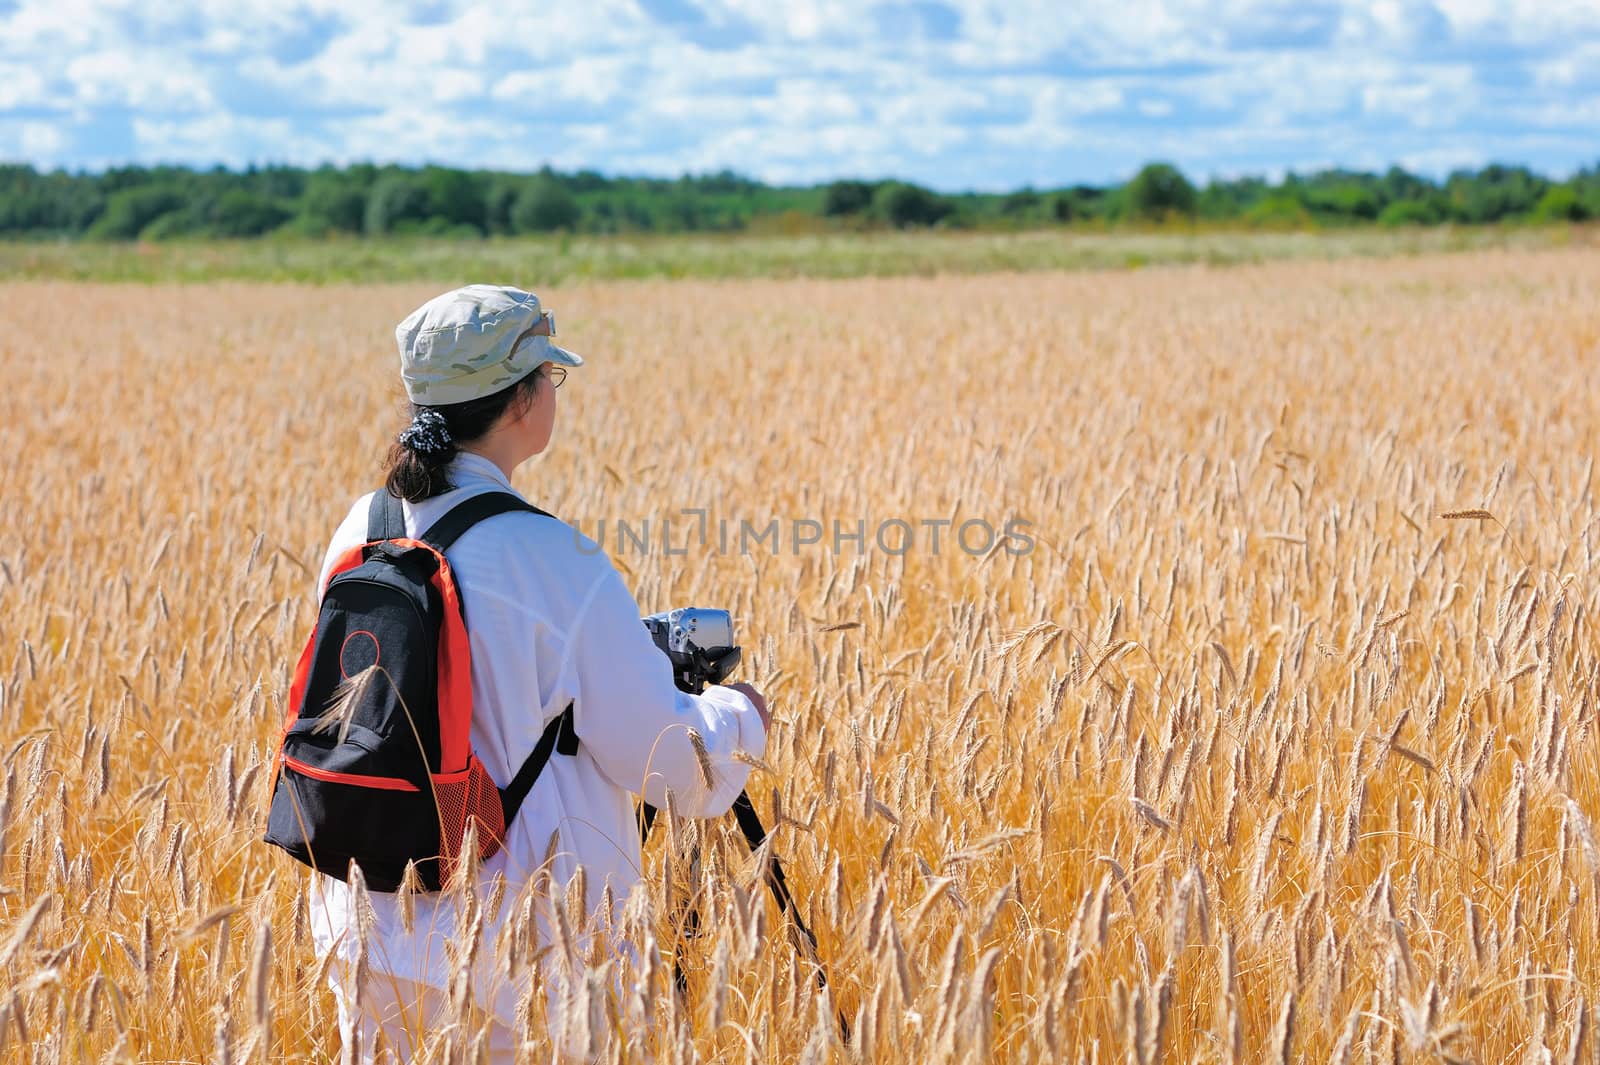 Wheat field by styf22